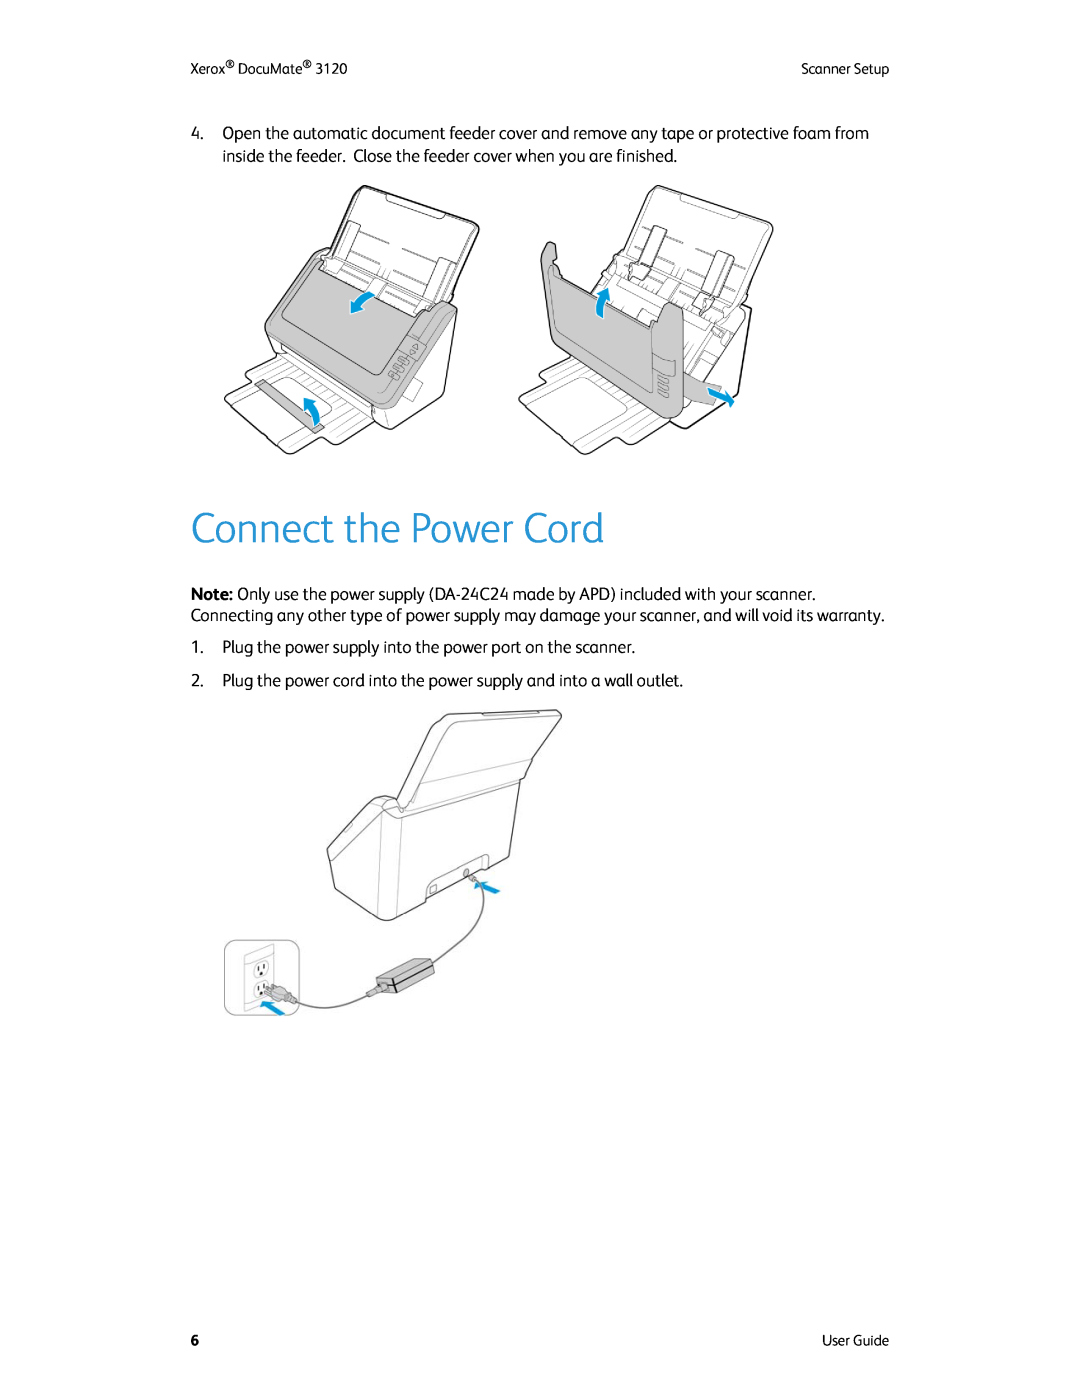 Xerox xerox manual Connect the Power Cord 